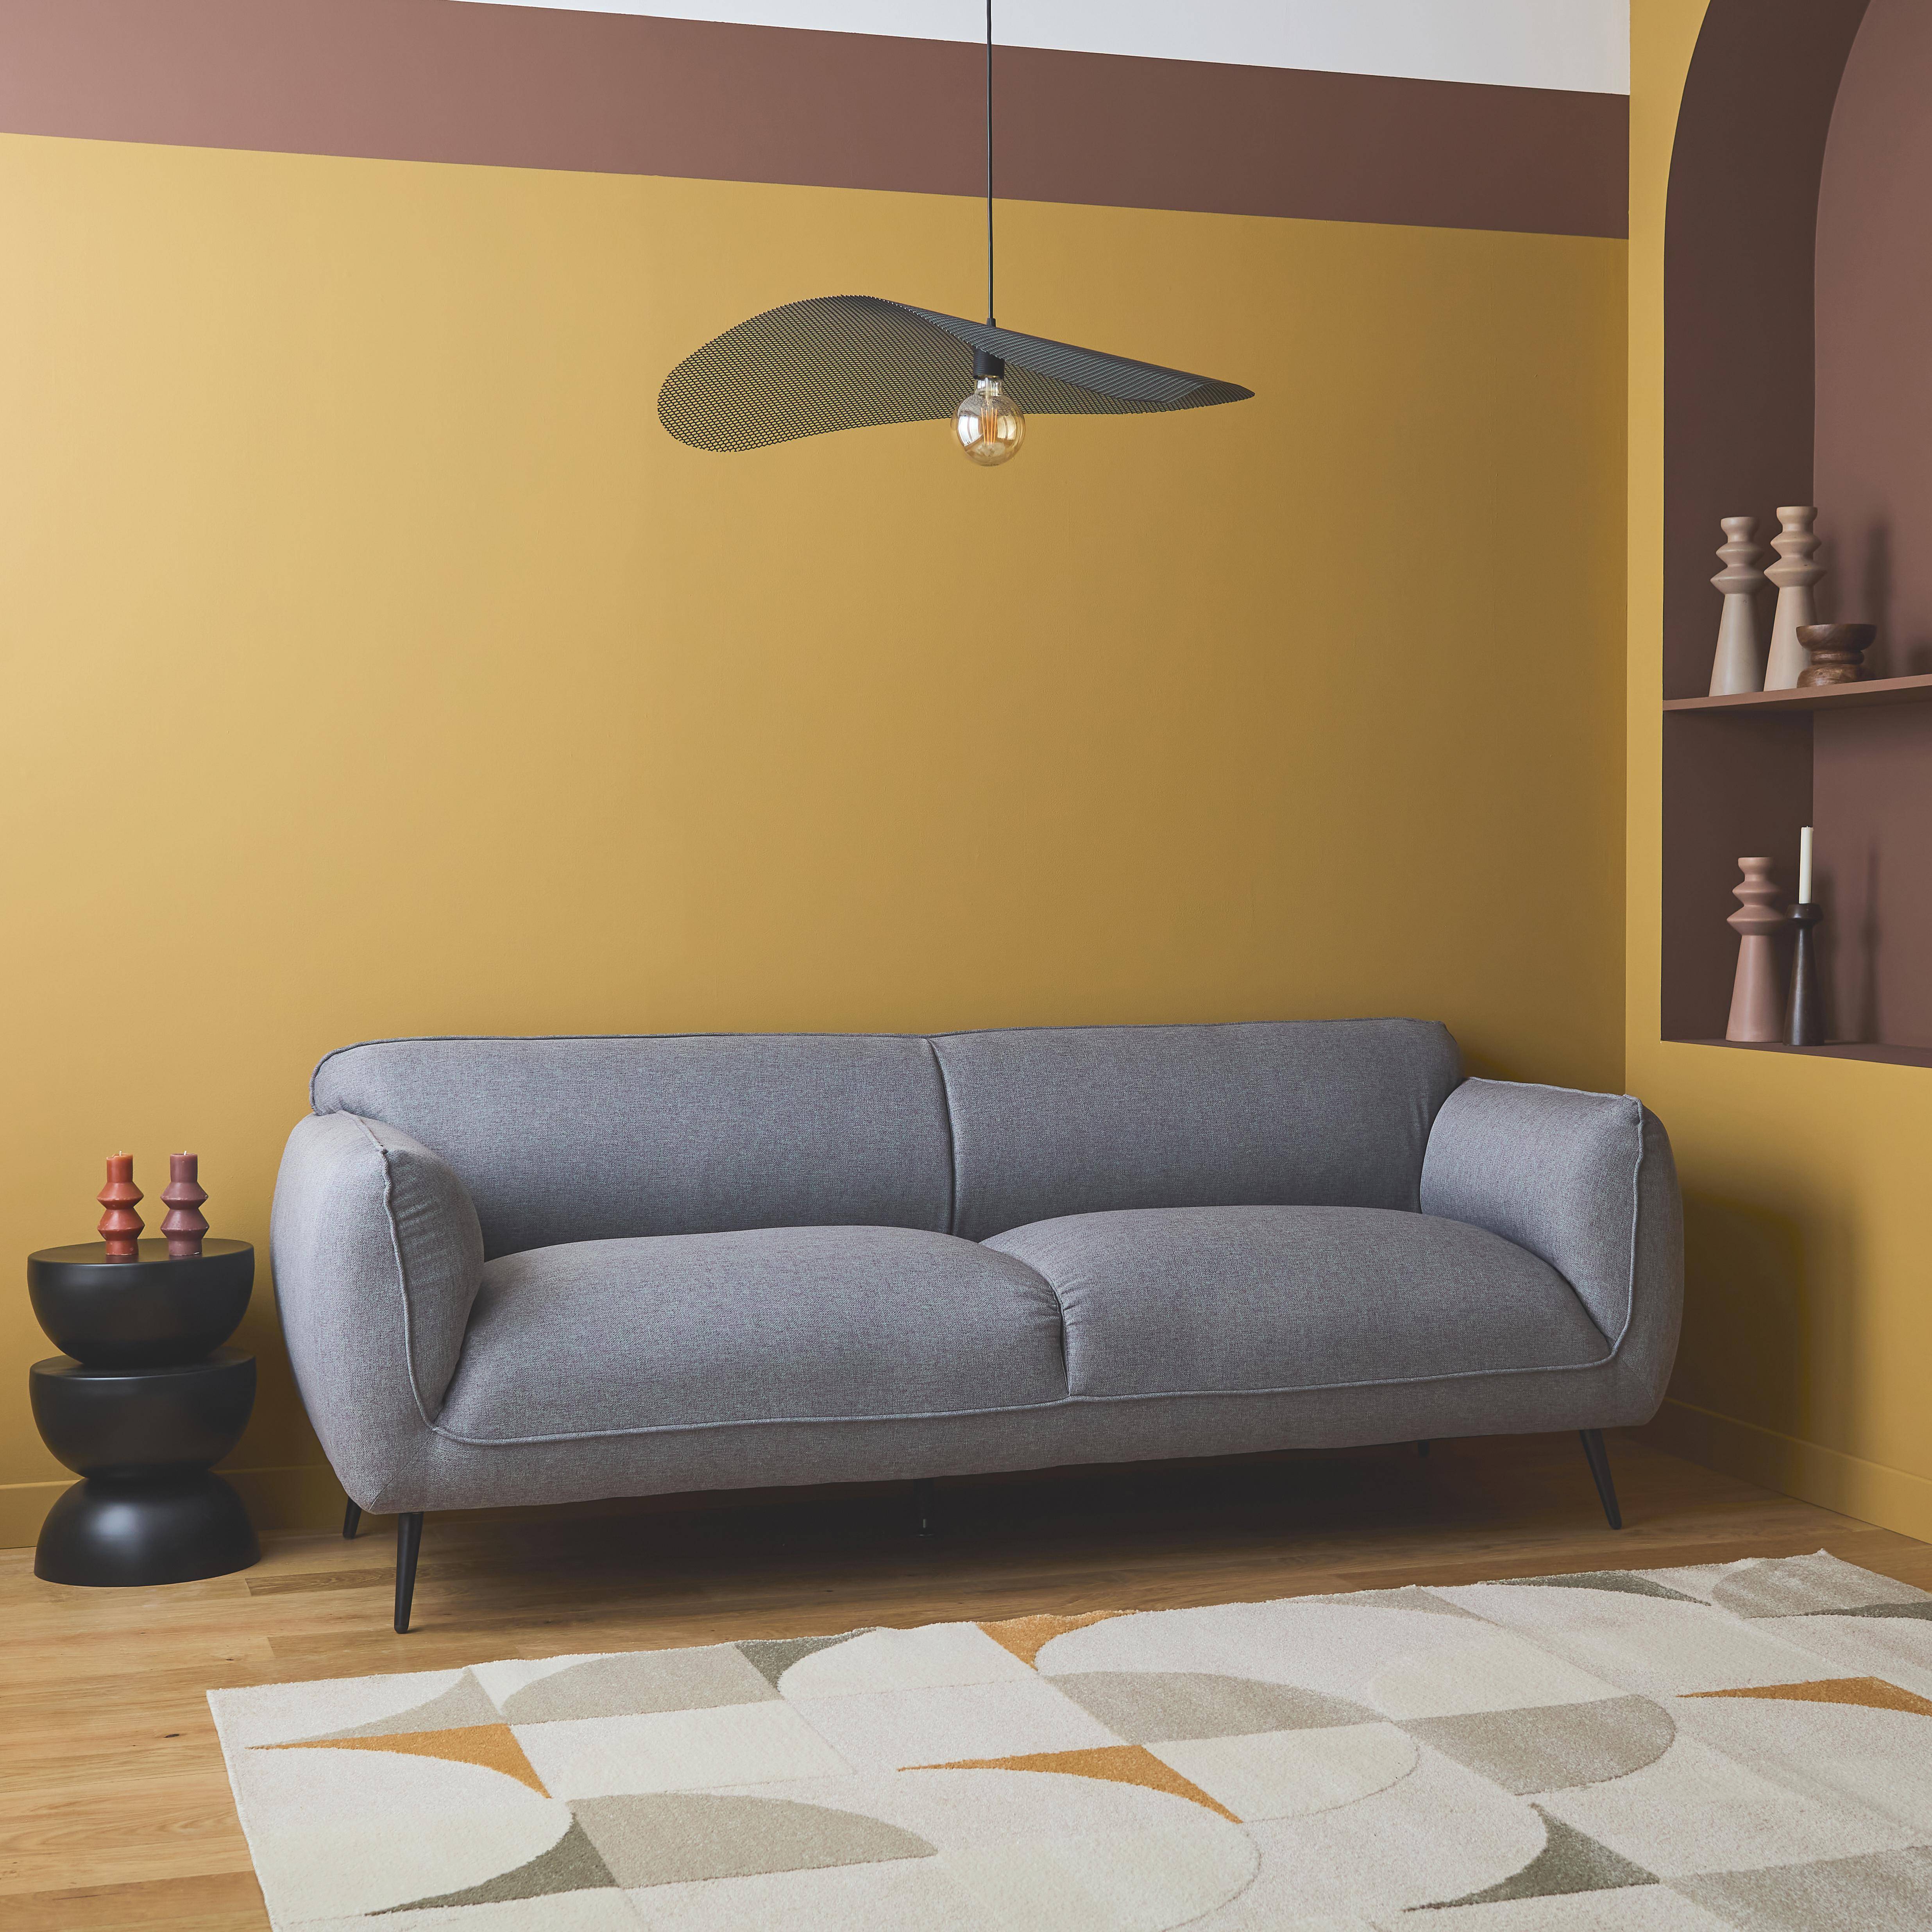 3-Sitzer-Sofa mit hellgrauem Stoffbezug und schwarzen Metallfüßen - Soft,sweeek,Photo2